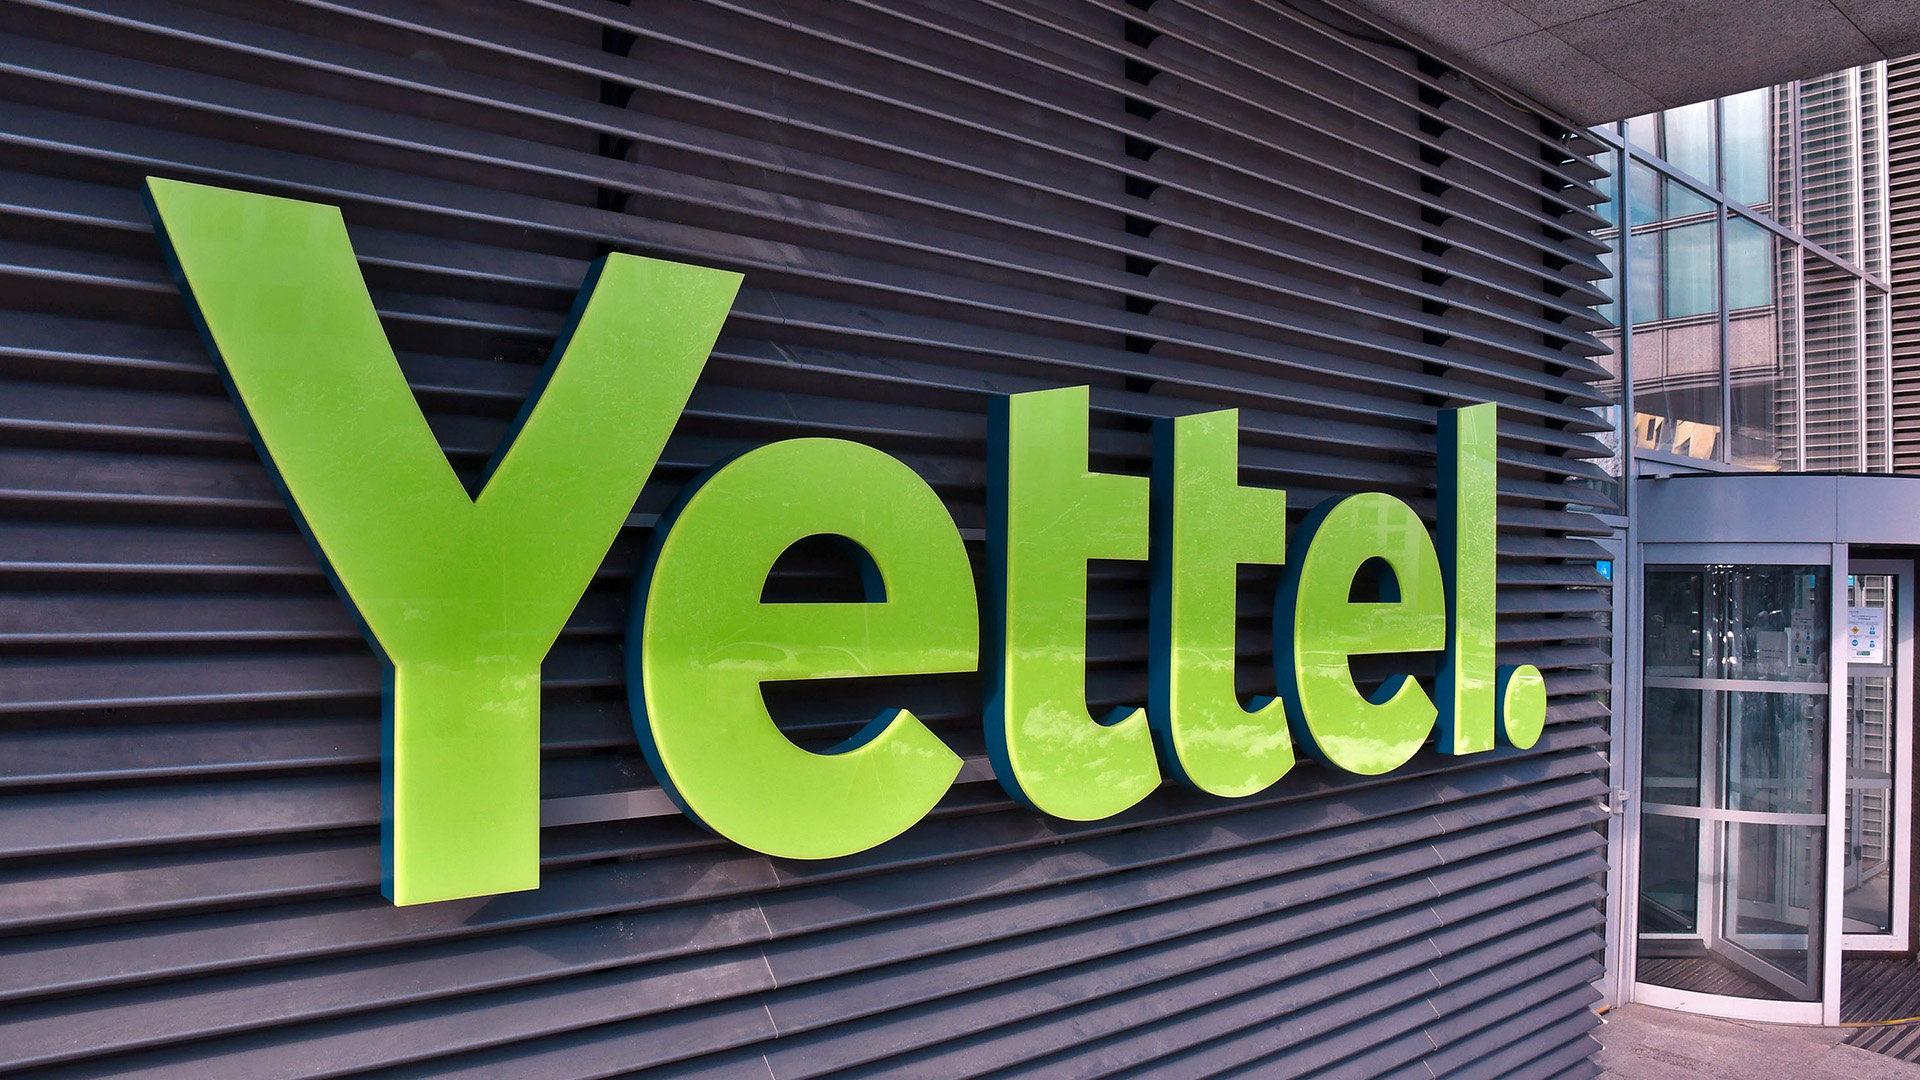 Yettel ще компенсира съществуващите въглеродни емисии на своя автопарк в